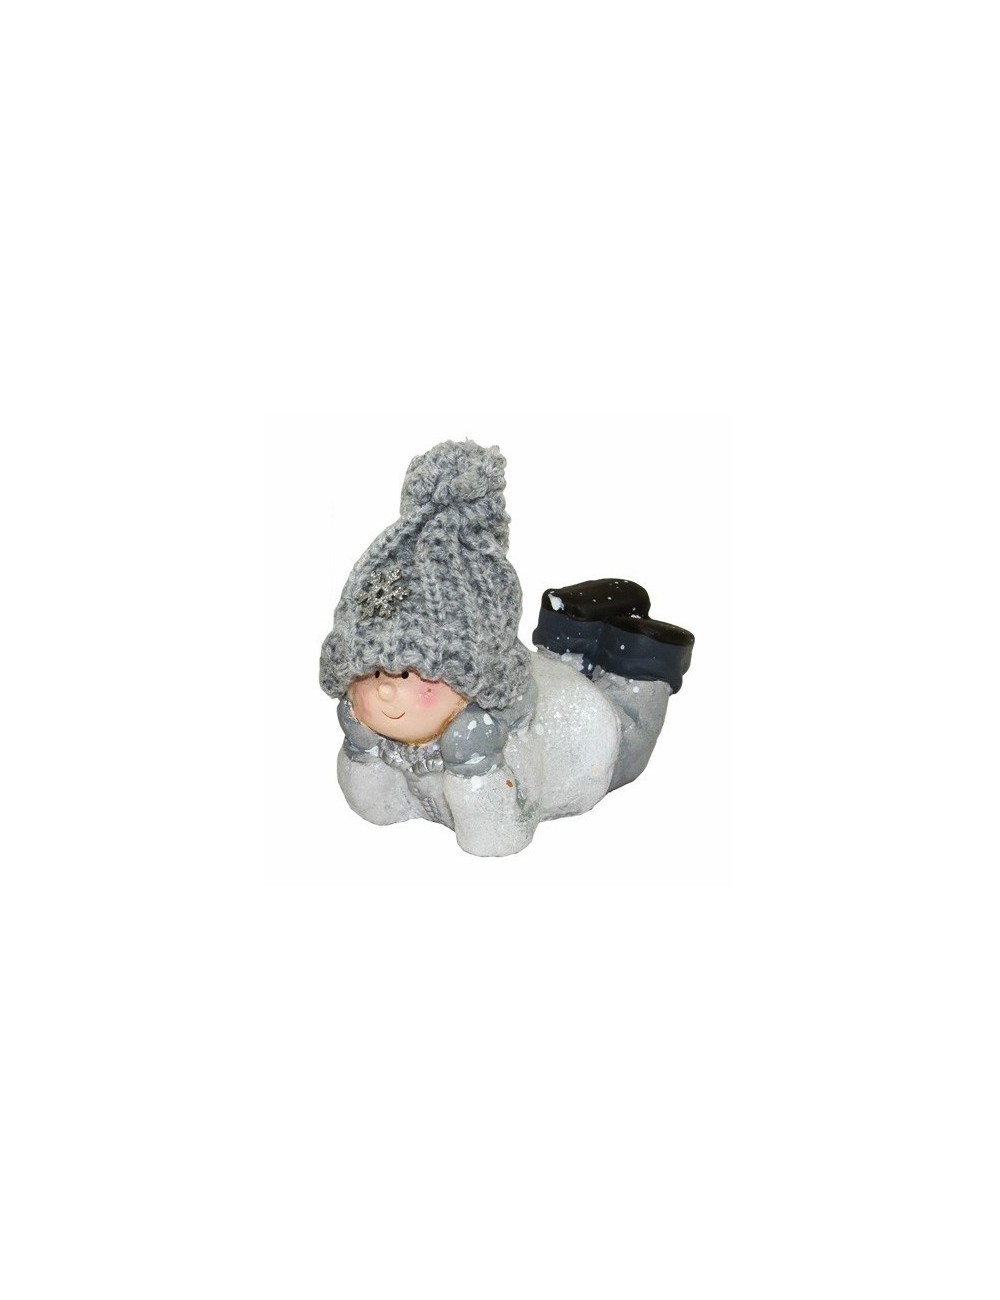 Figurka zimowa DZIECKO w czapce z włóczki 9x9,5 cm